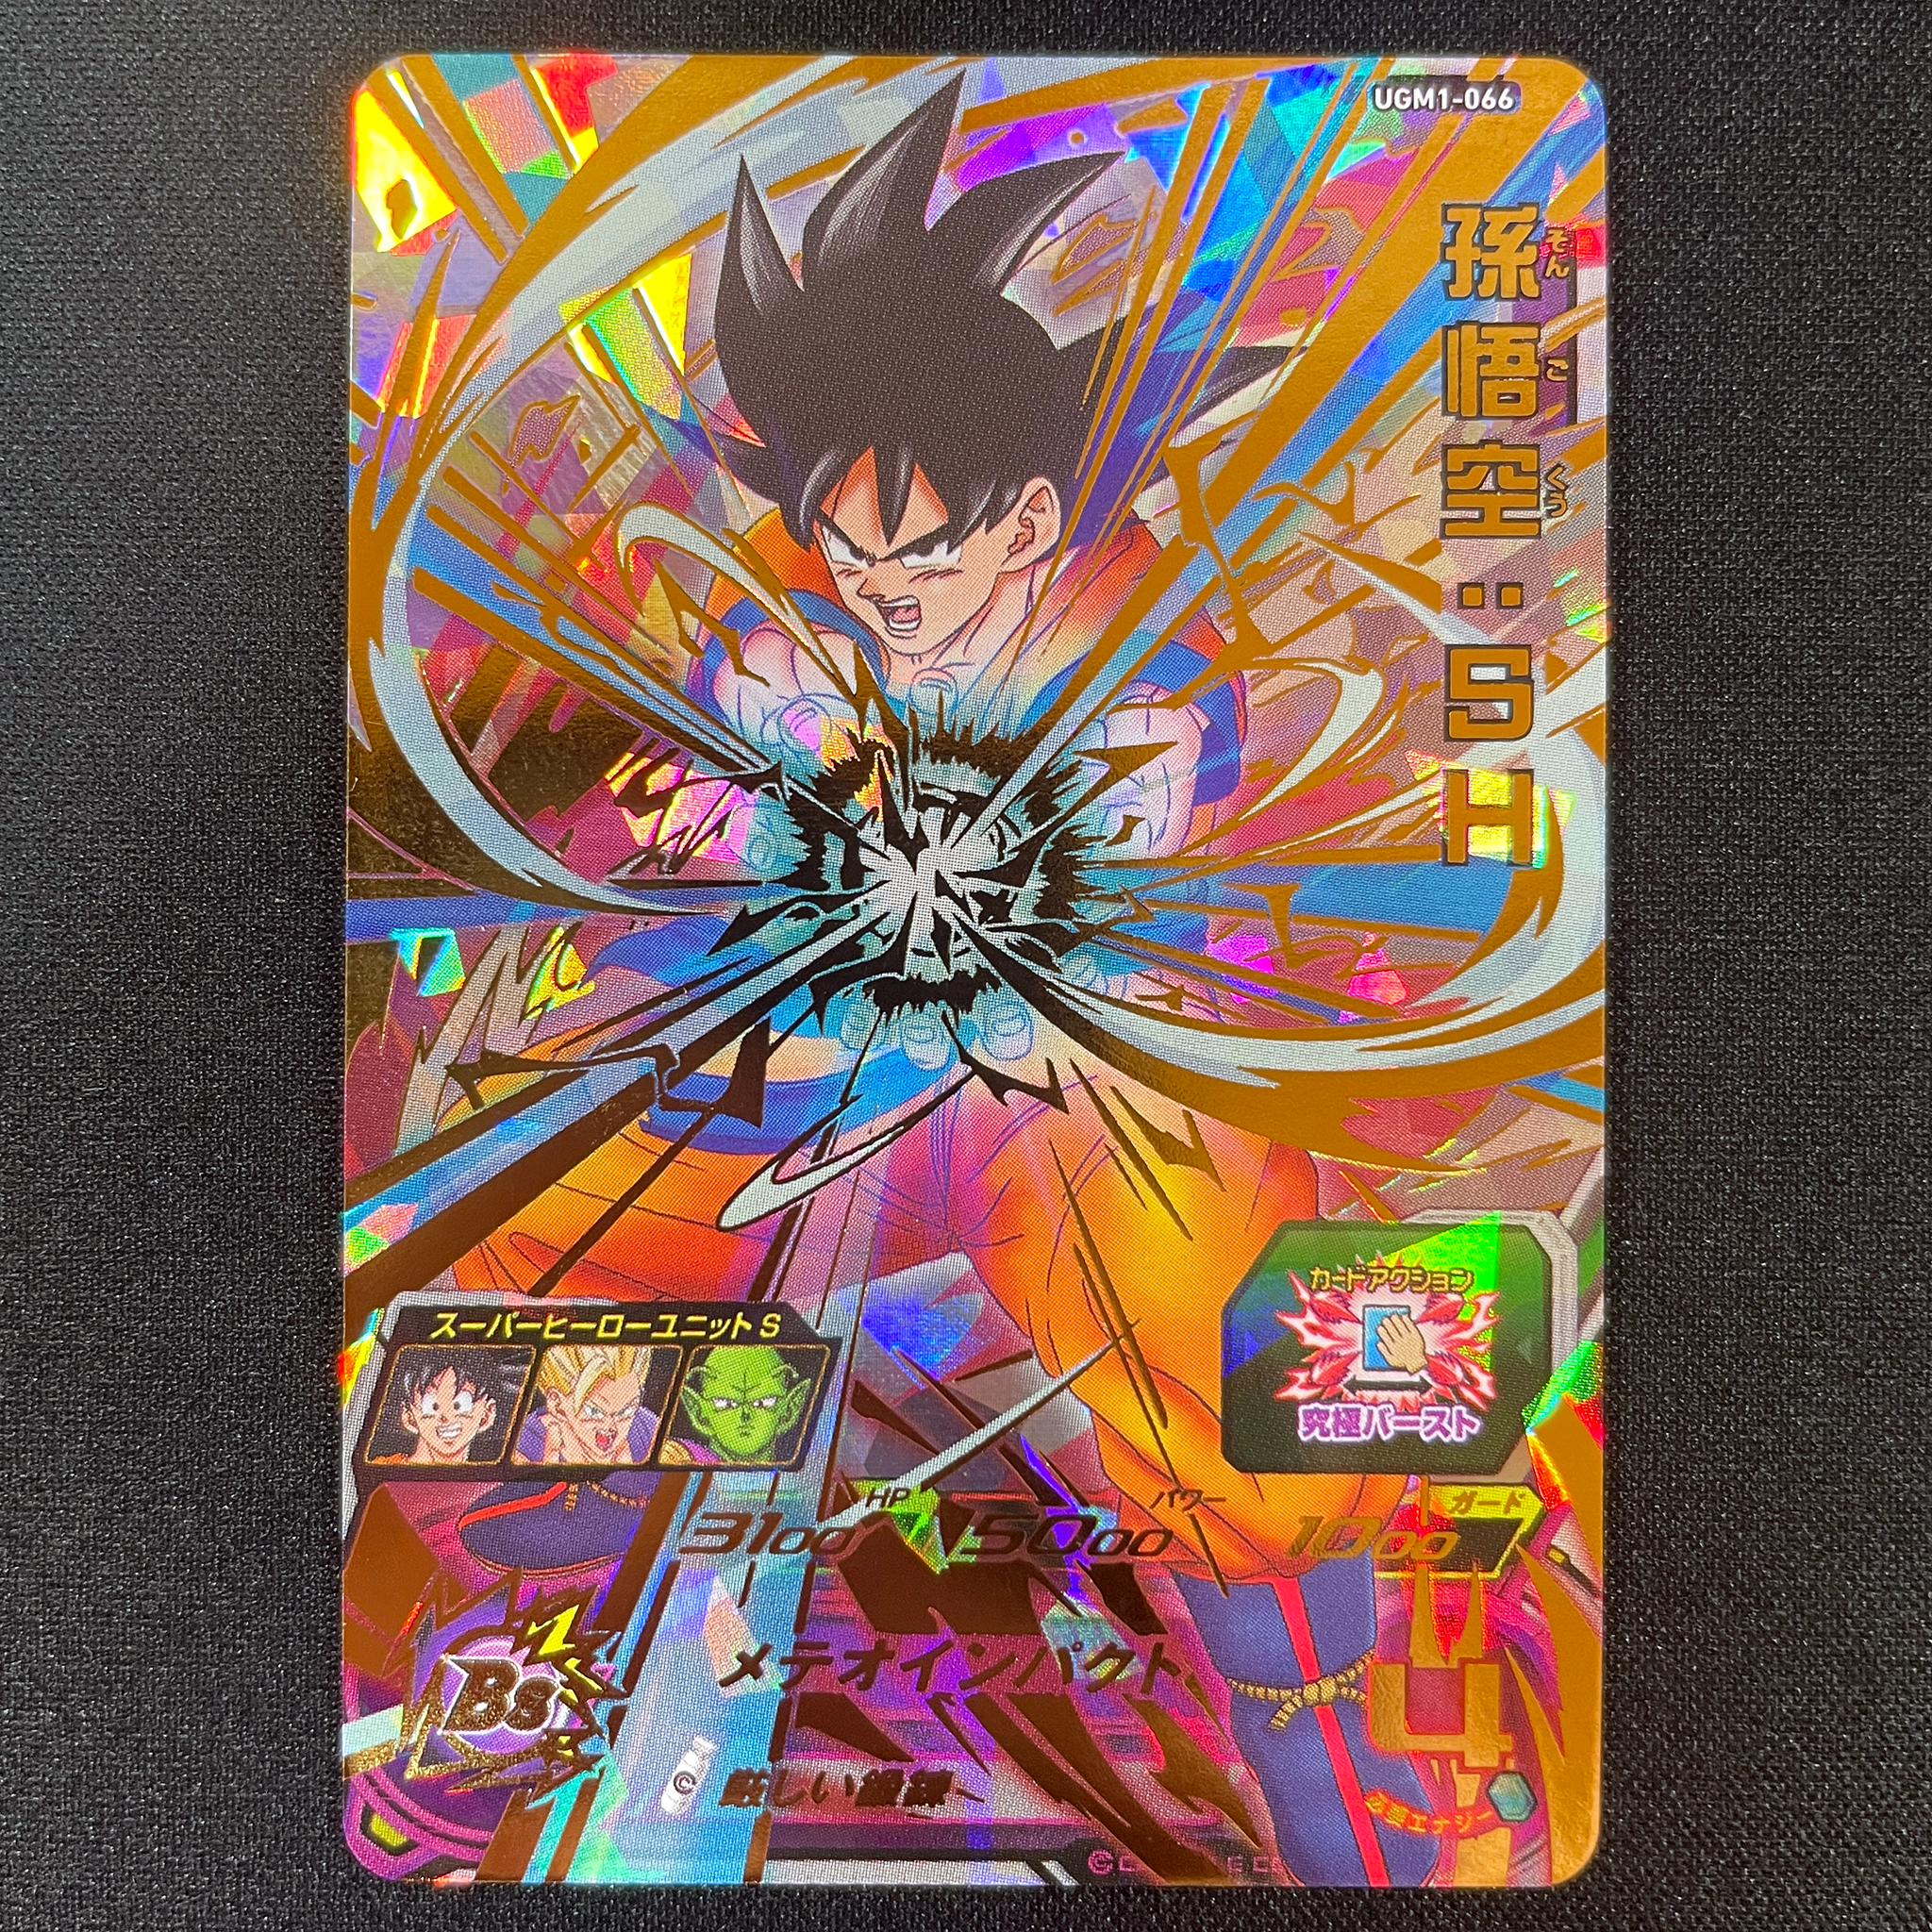 SUPER DRAGON BALL HEROES UGM1-066 Ultimate Rare card  Son Goku : SH